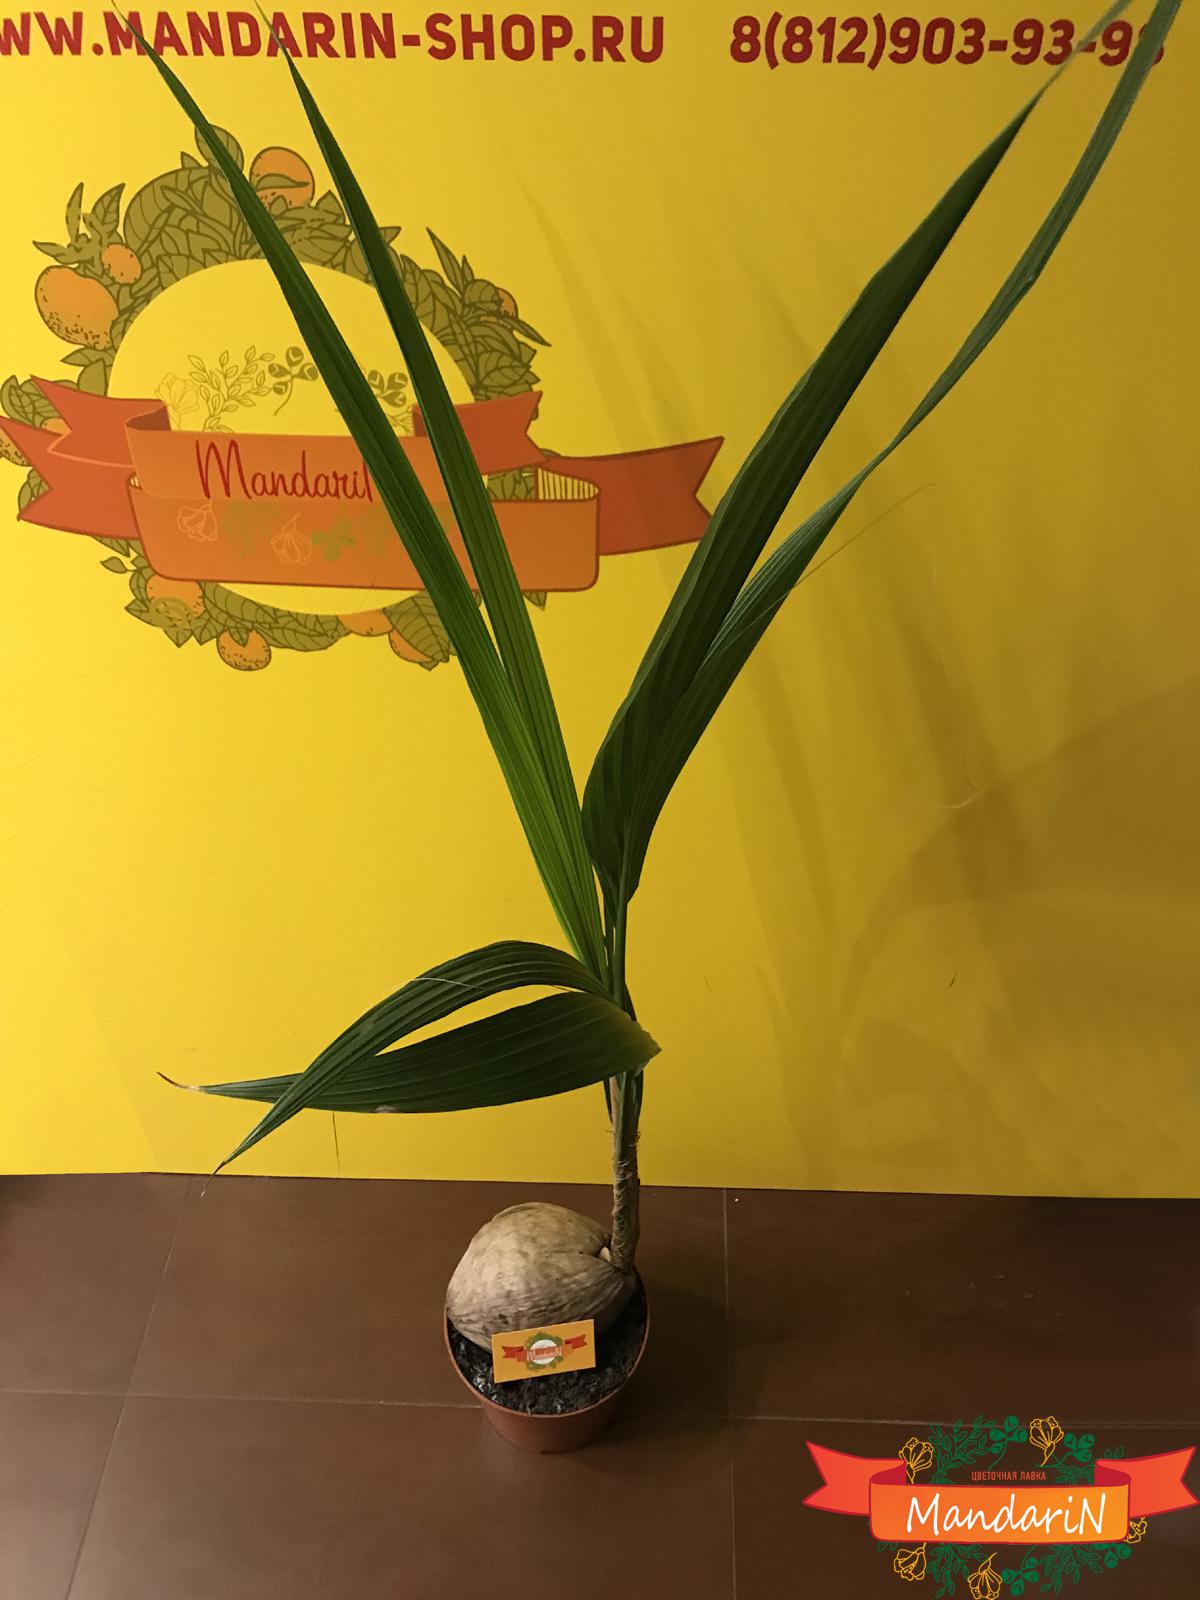 Кокосовая пальма в магазине Мандарин